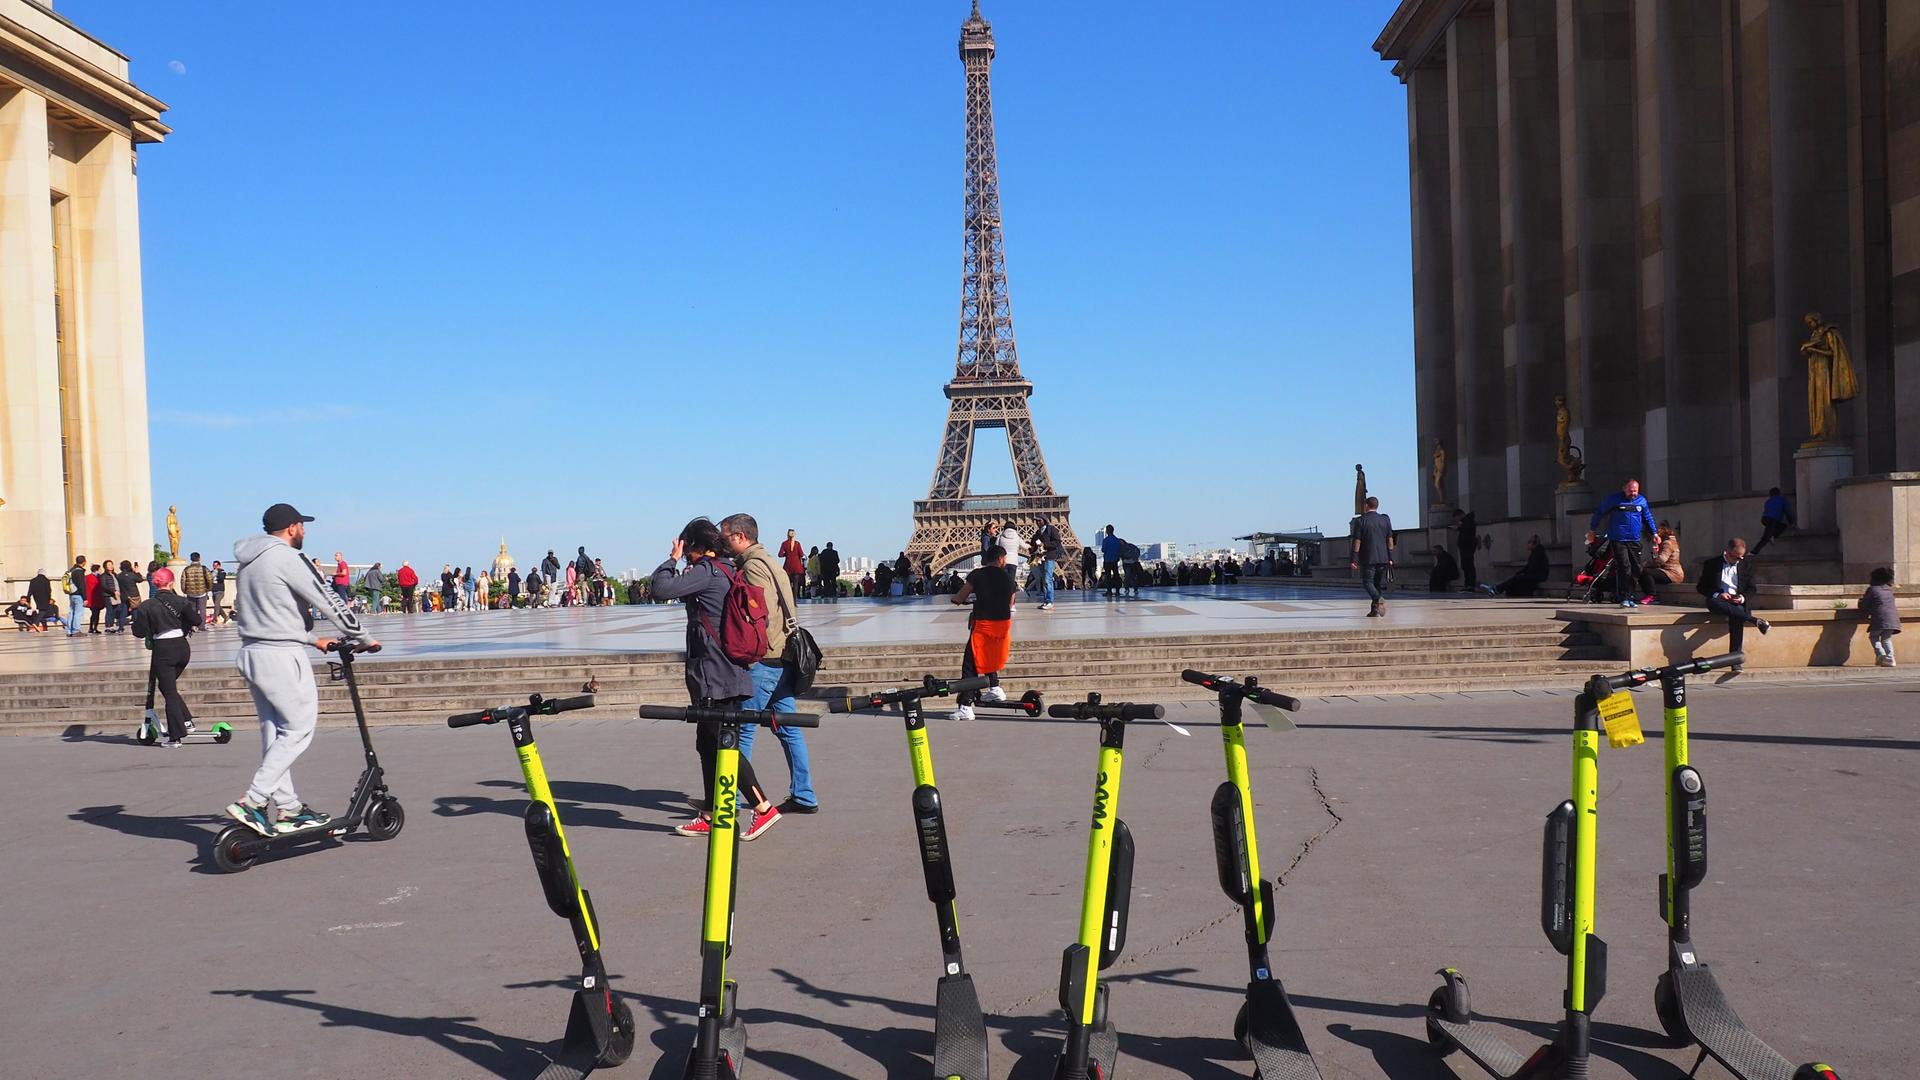 Das Foto zeigt gelbe E-Roller, die vor dem Eiffelturm auf einem Platz stehen.